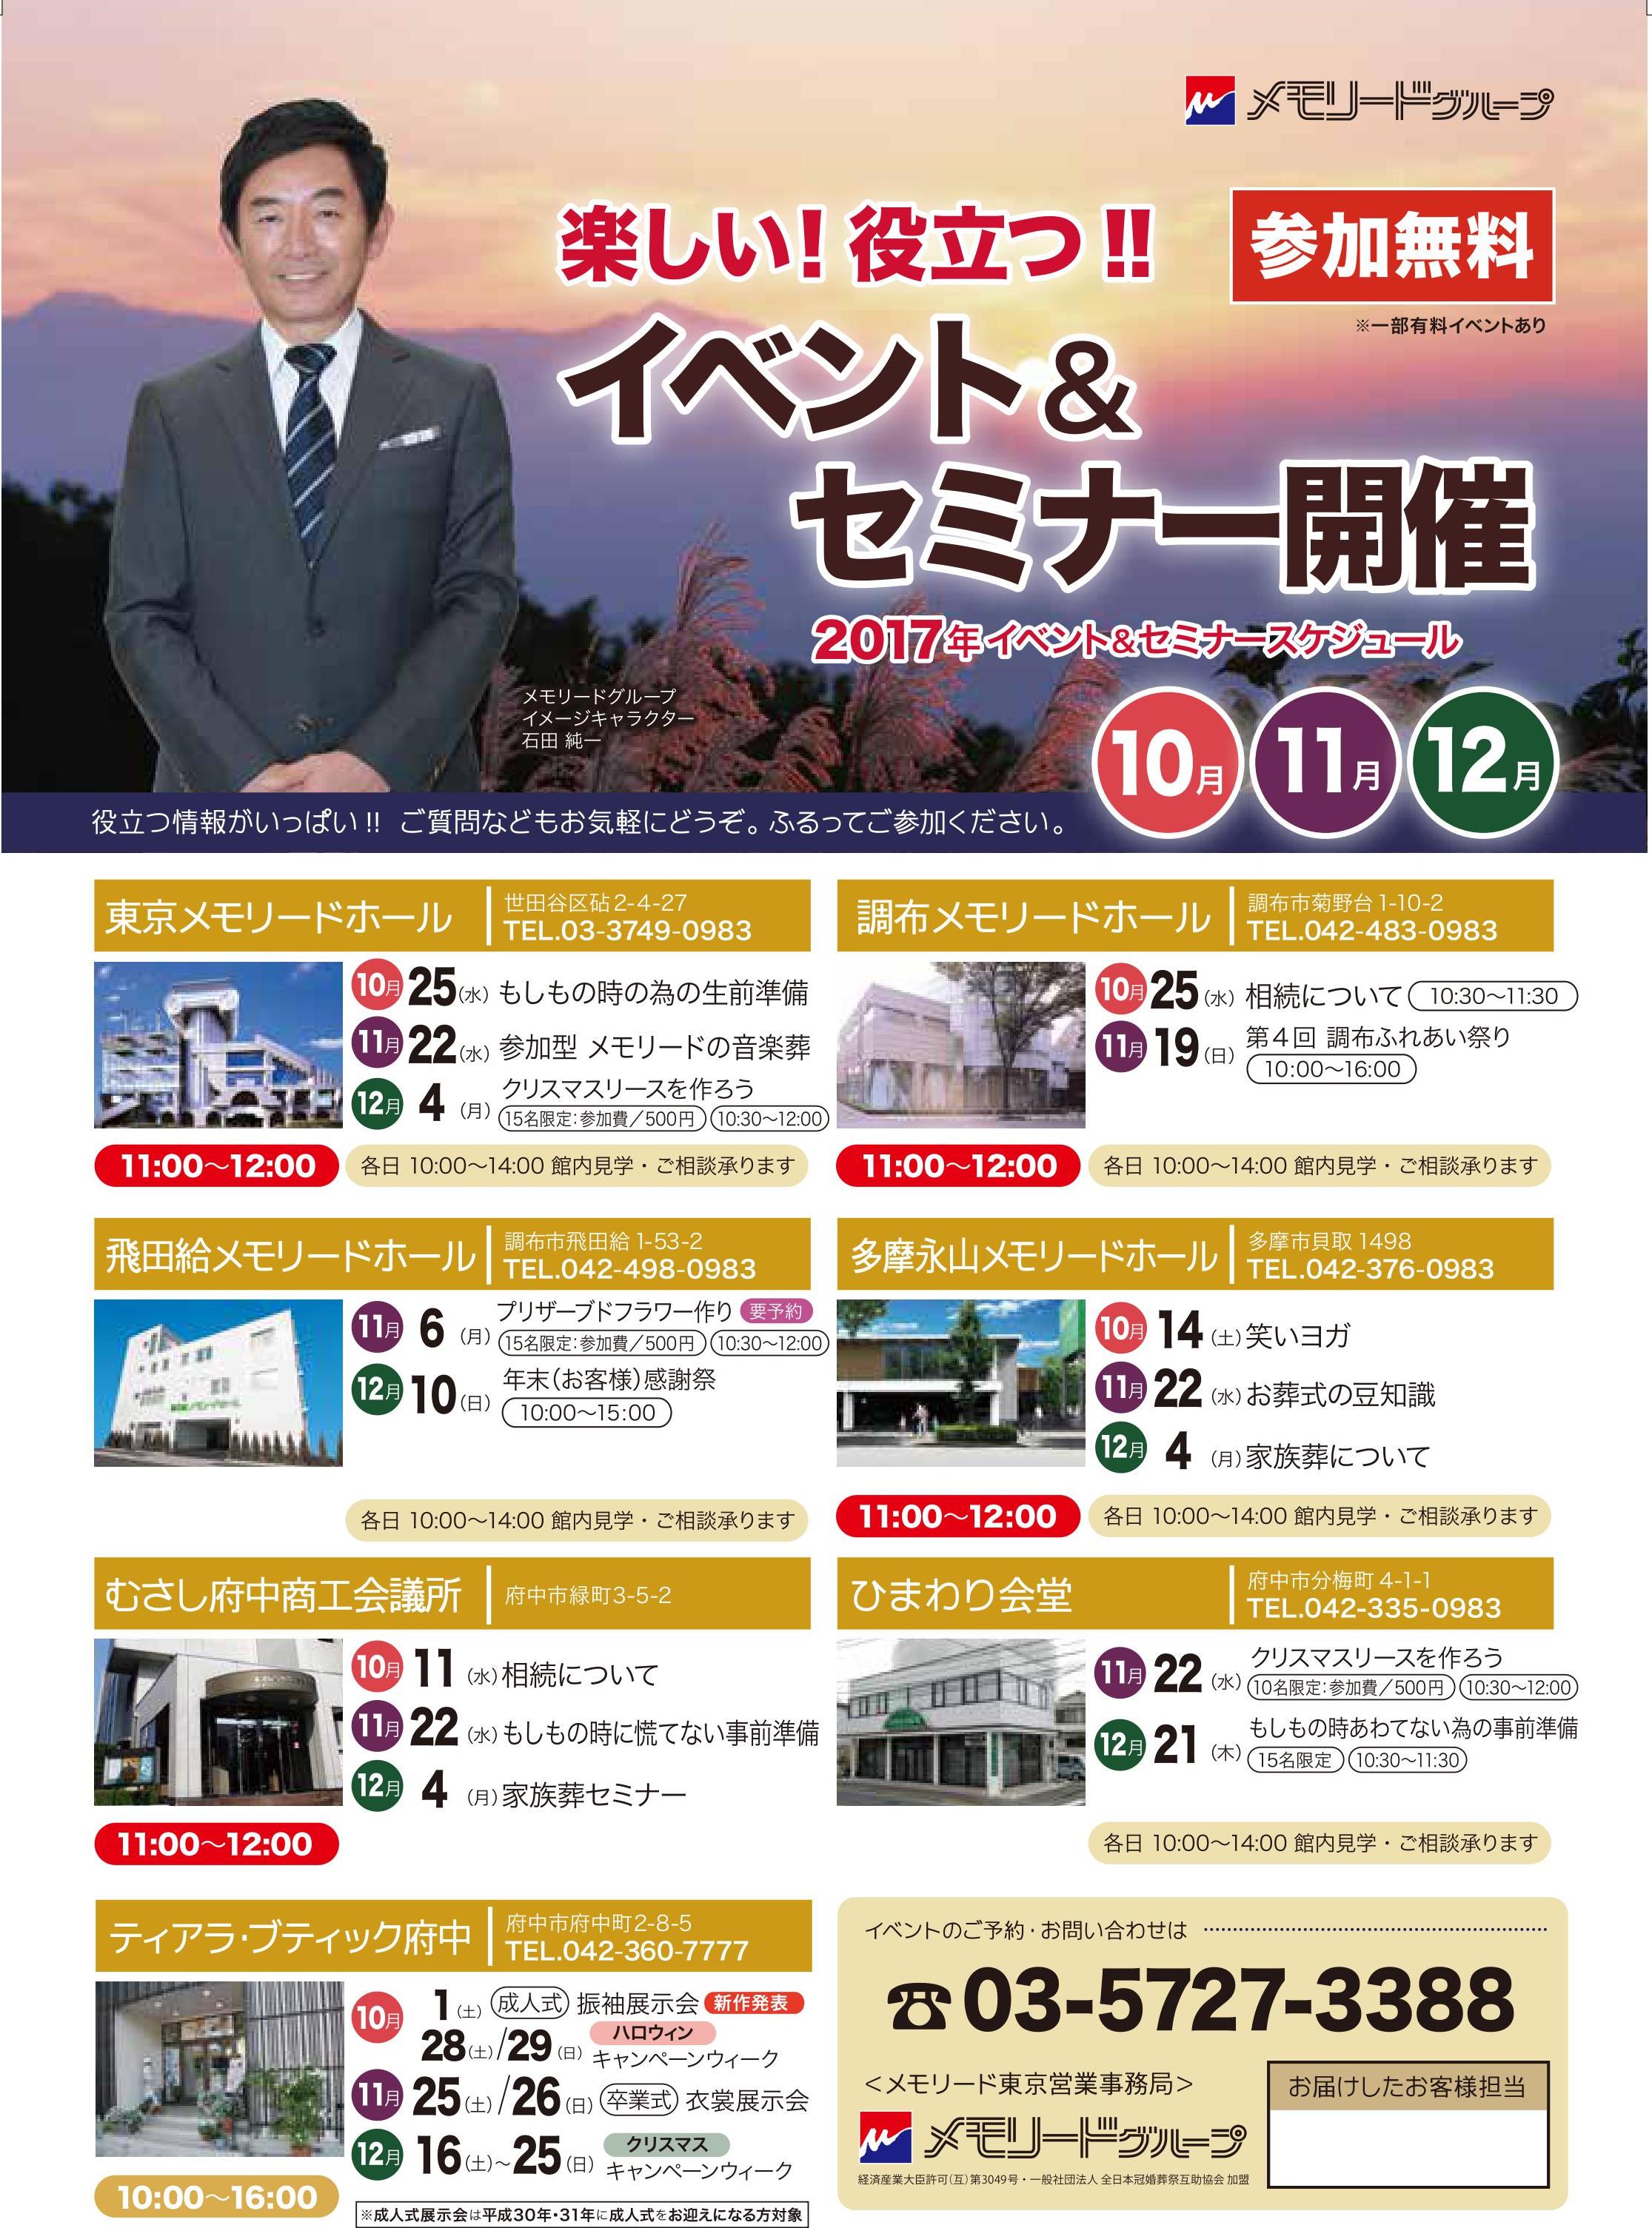 東京 10 11 水 相続について むさし府中商工会議所 新着情報 メモリードのお葬式 関東